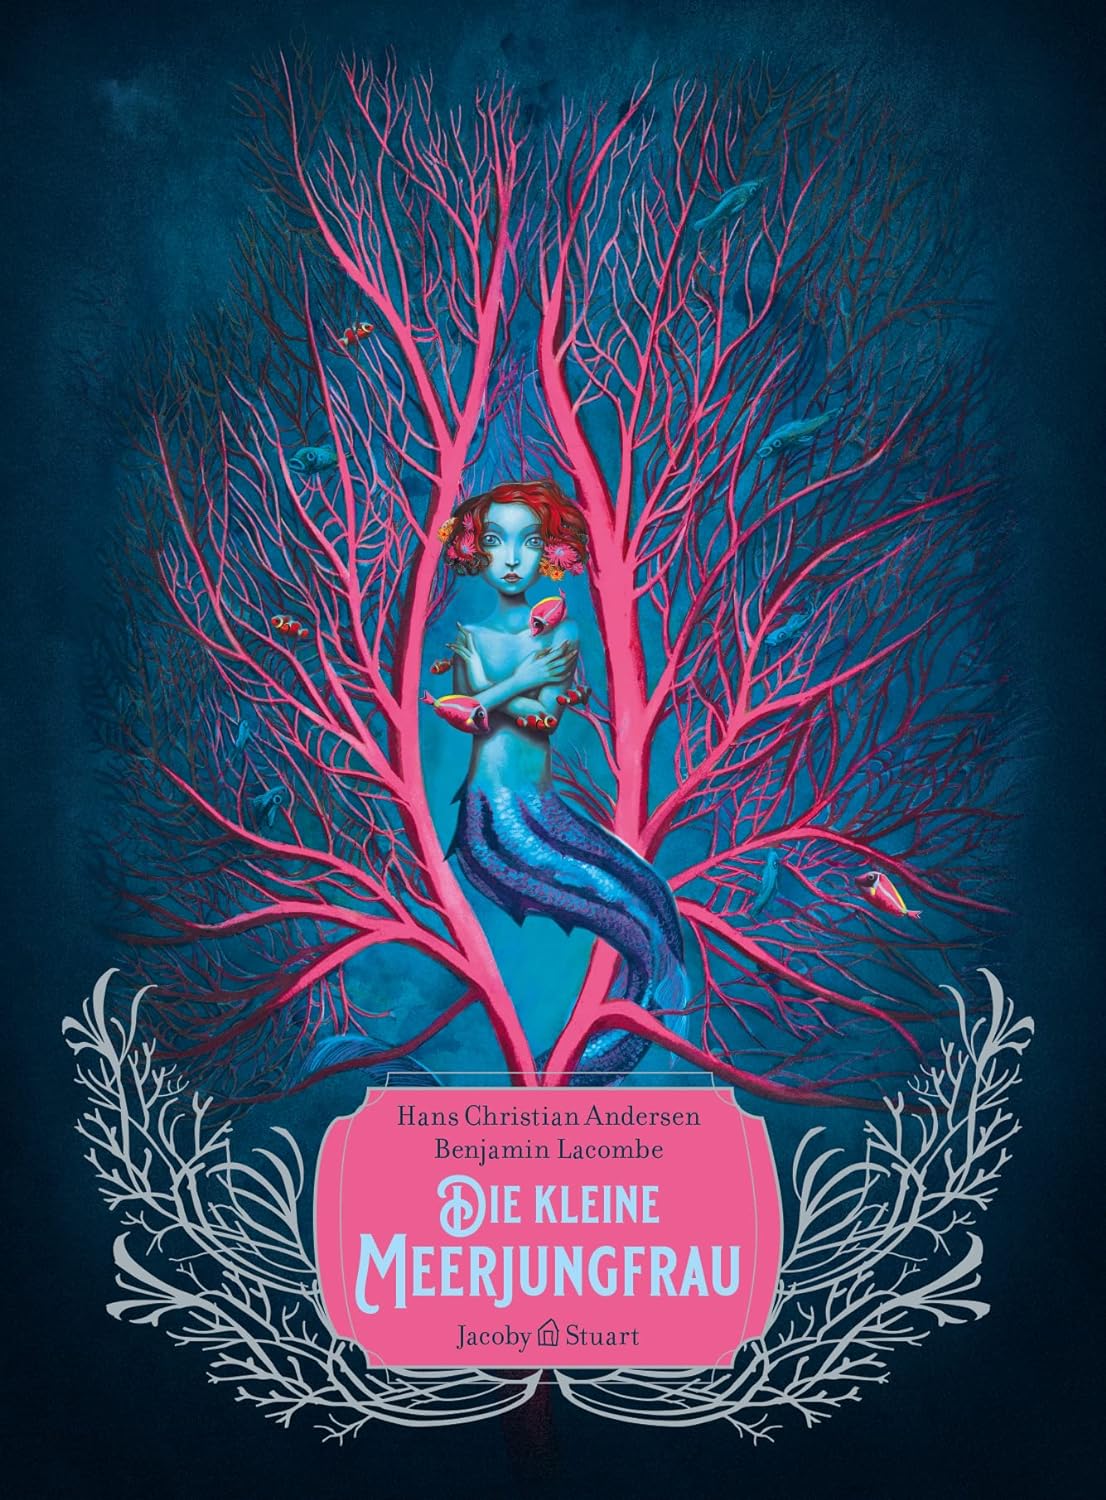 Hans Christian Andersen, Benjamin Lacombe: Die kleine Meerjungfrau (Hardcover, German language, Verlagshaus Jacoby & Stuart)